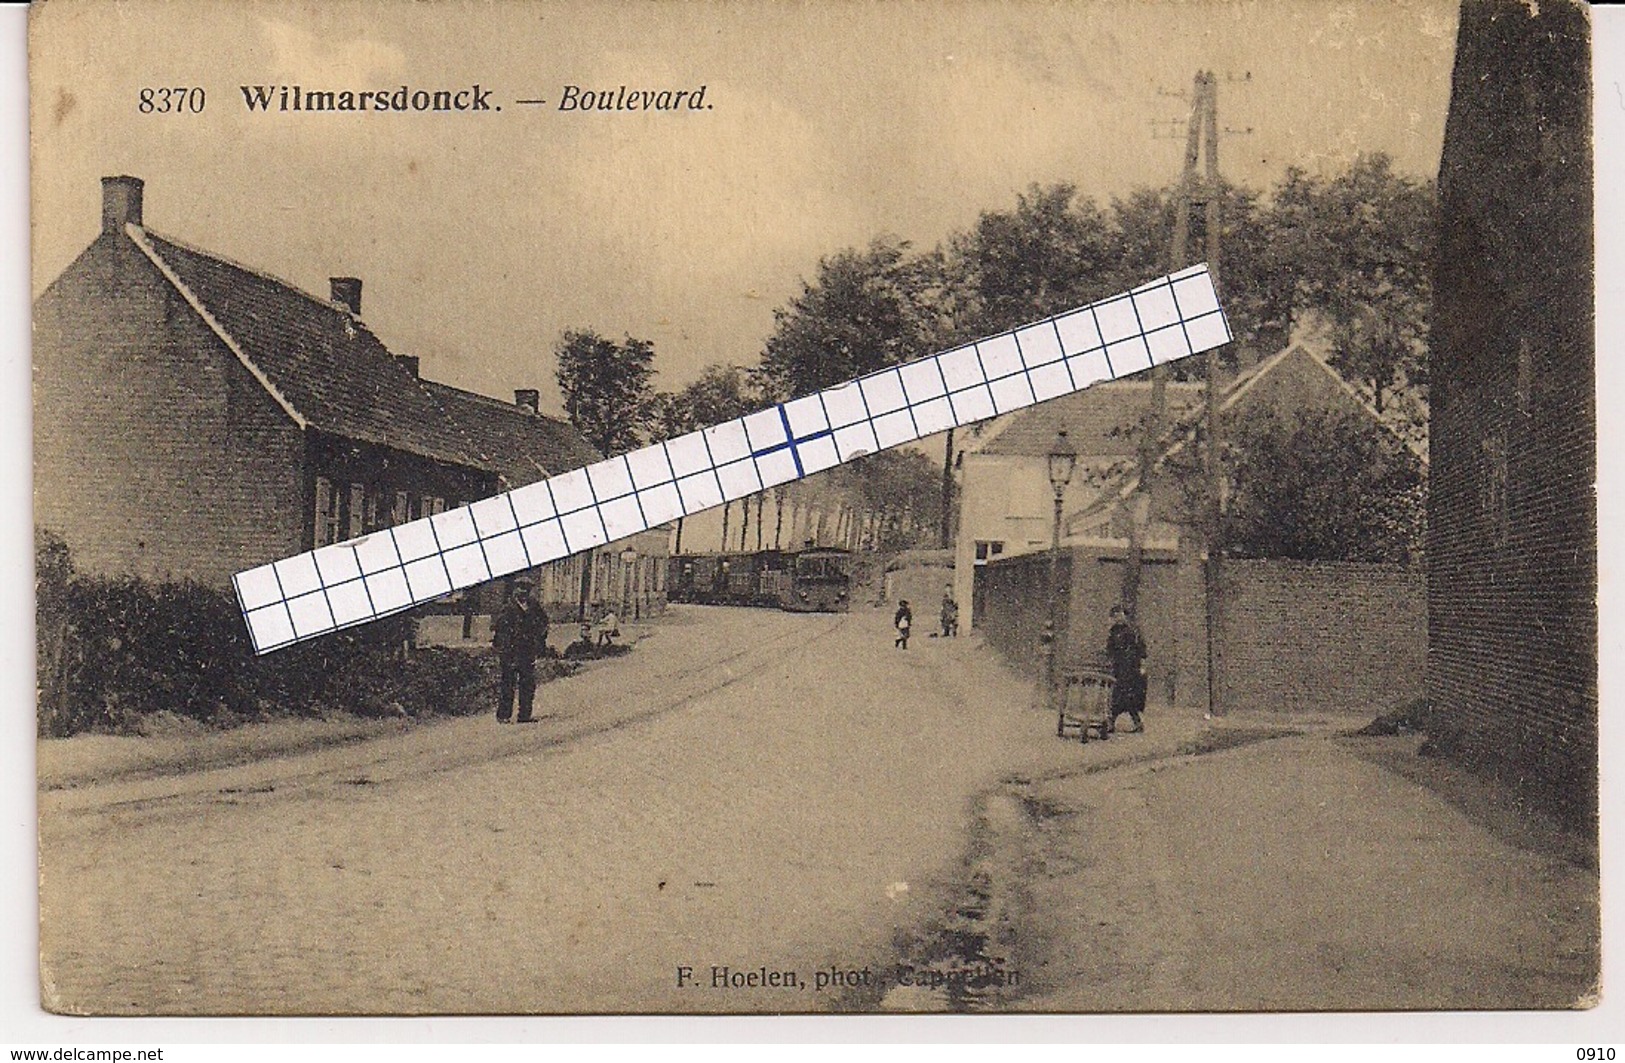 WILMARSDONCK-WILMARSDONK-ANTWERPEN " BOULEVARD MET AANKOMENDE STOOMTRAM-TRAM A VAPEUR"HOELEN 8370 UITGIFTE 1920 TYPE 8 - Antwerpen